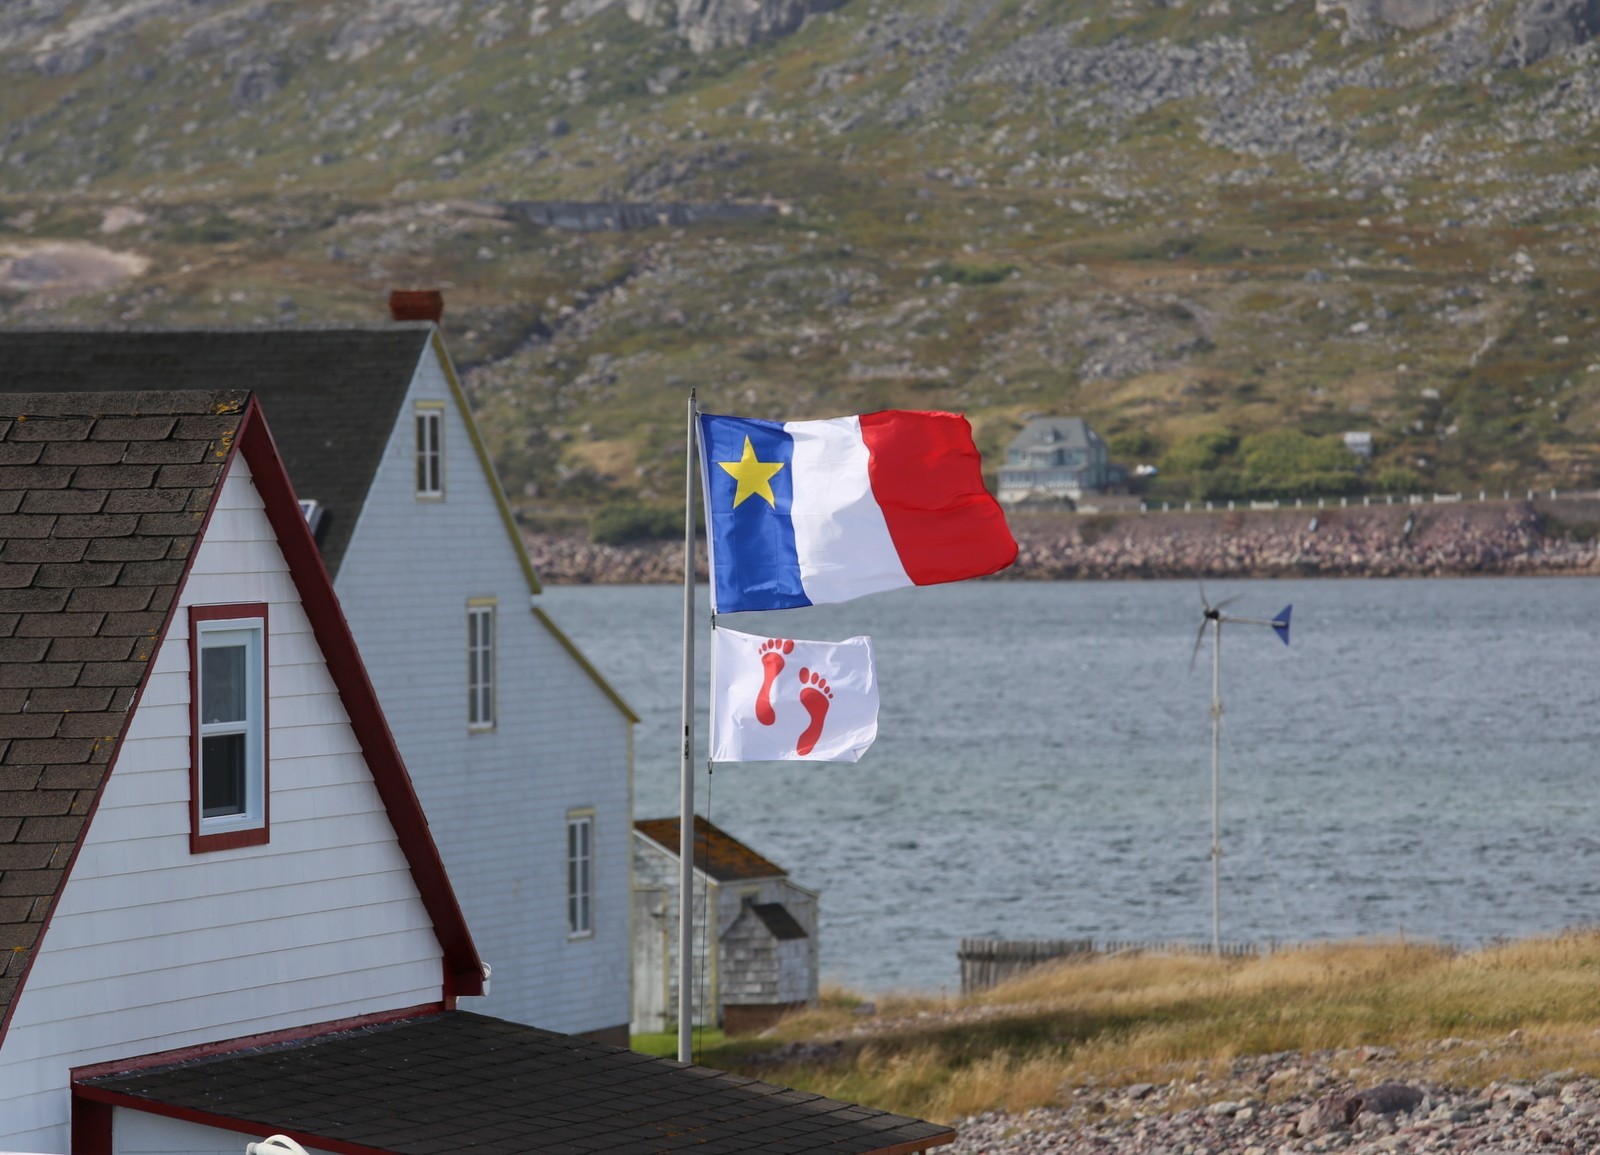 Île aux Marins Saint-Pierre et Miquelon